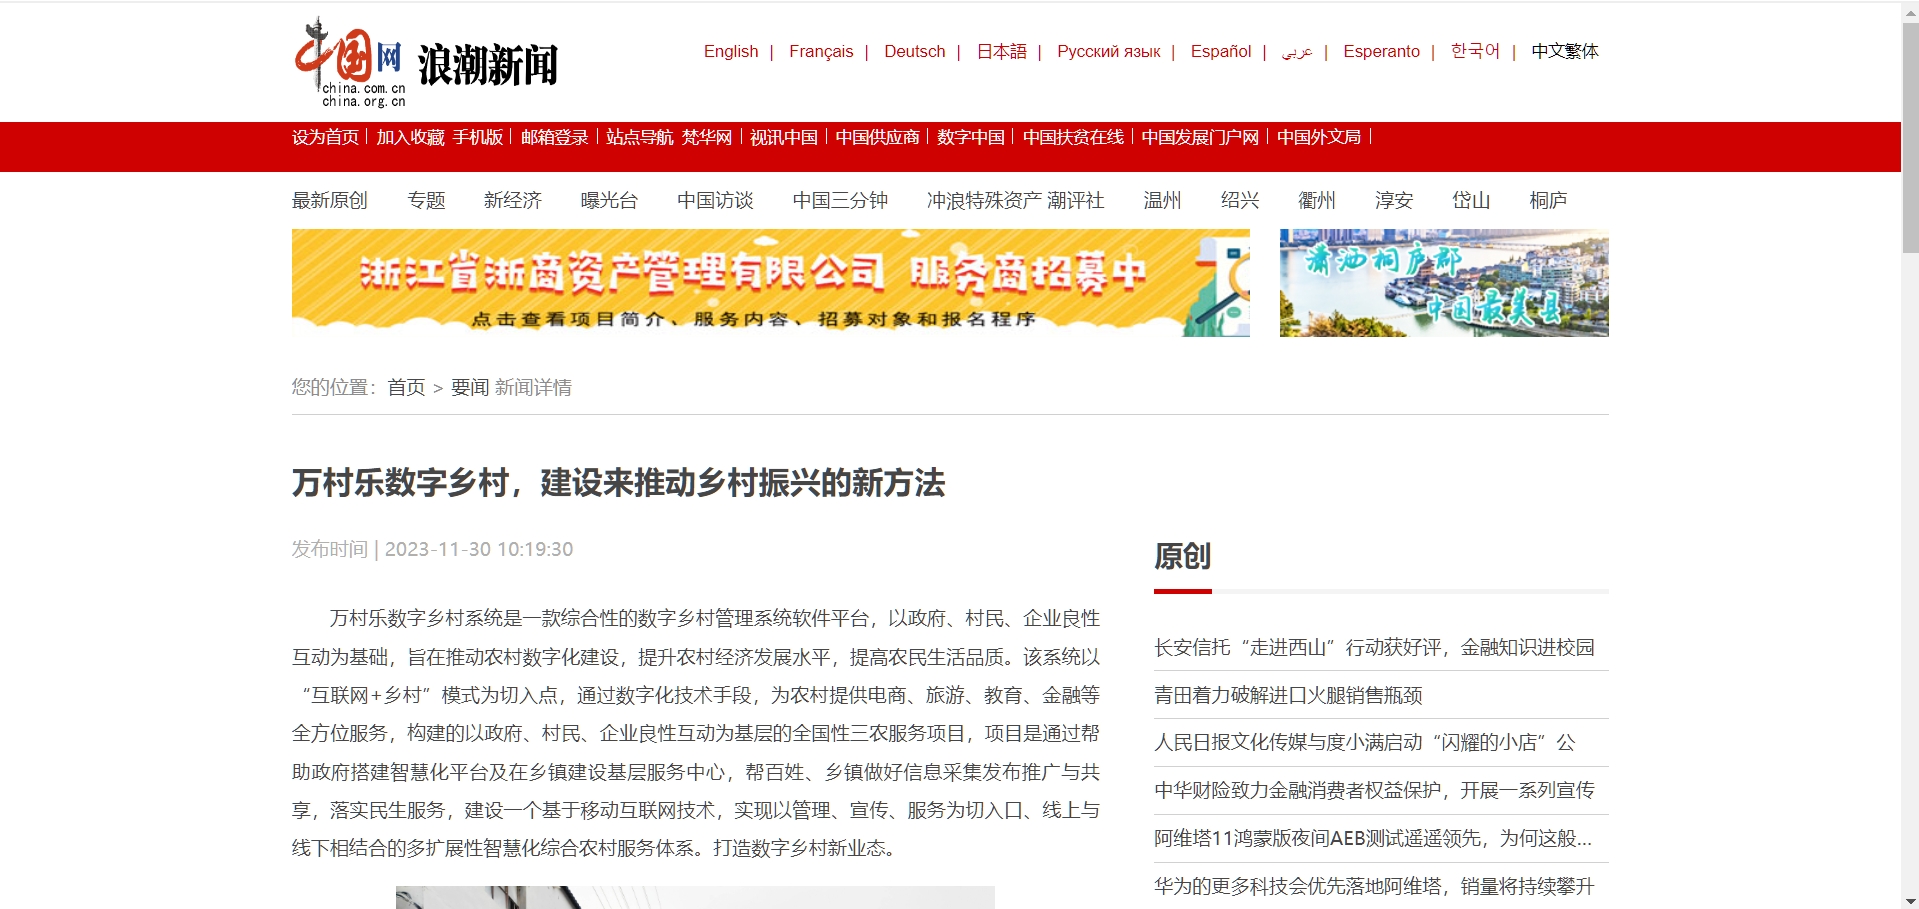 中国网浪潮新闻对万村乐数字乡村的报道